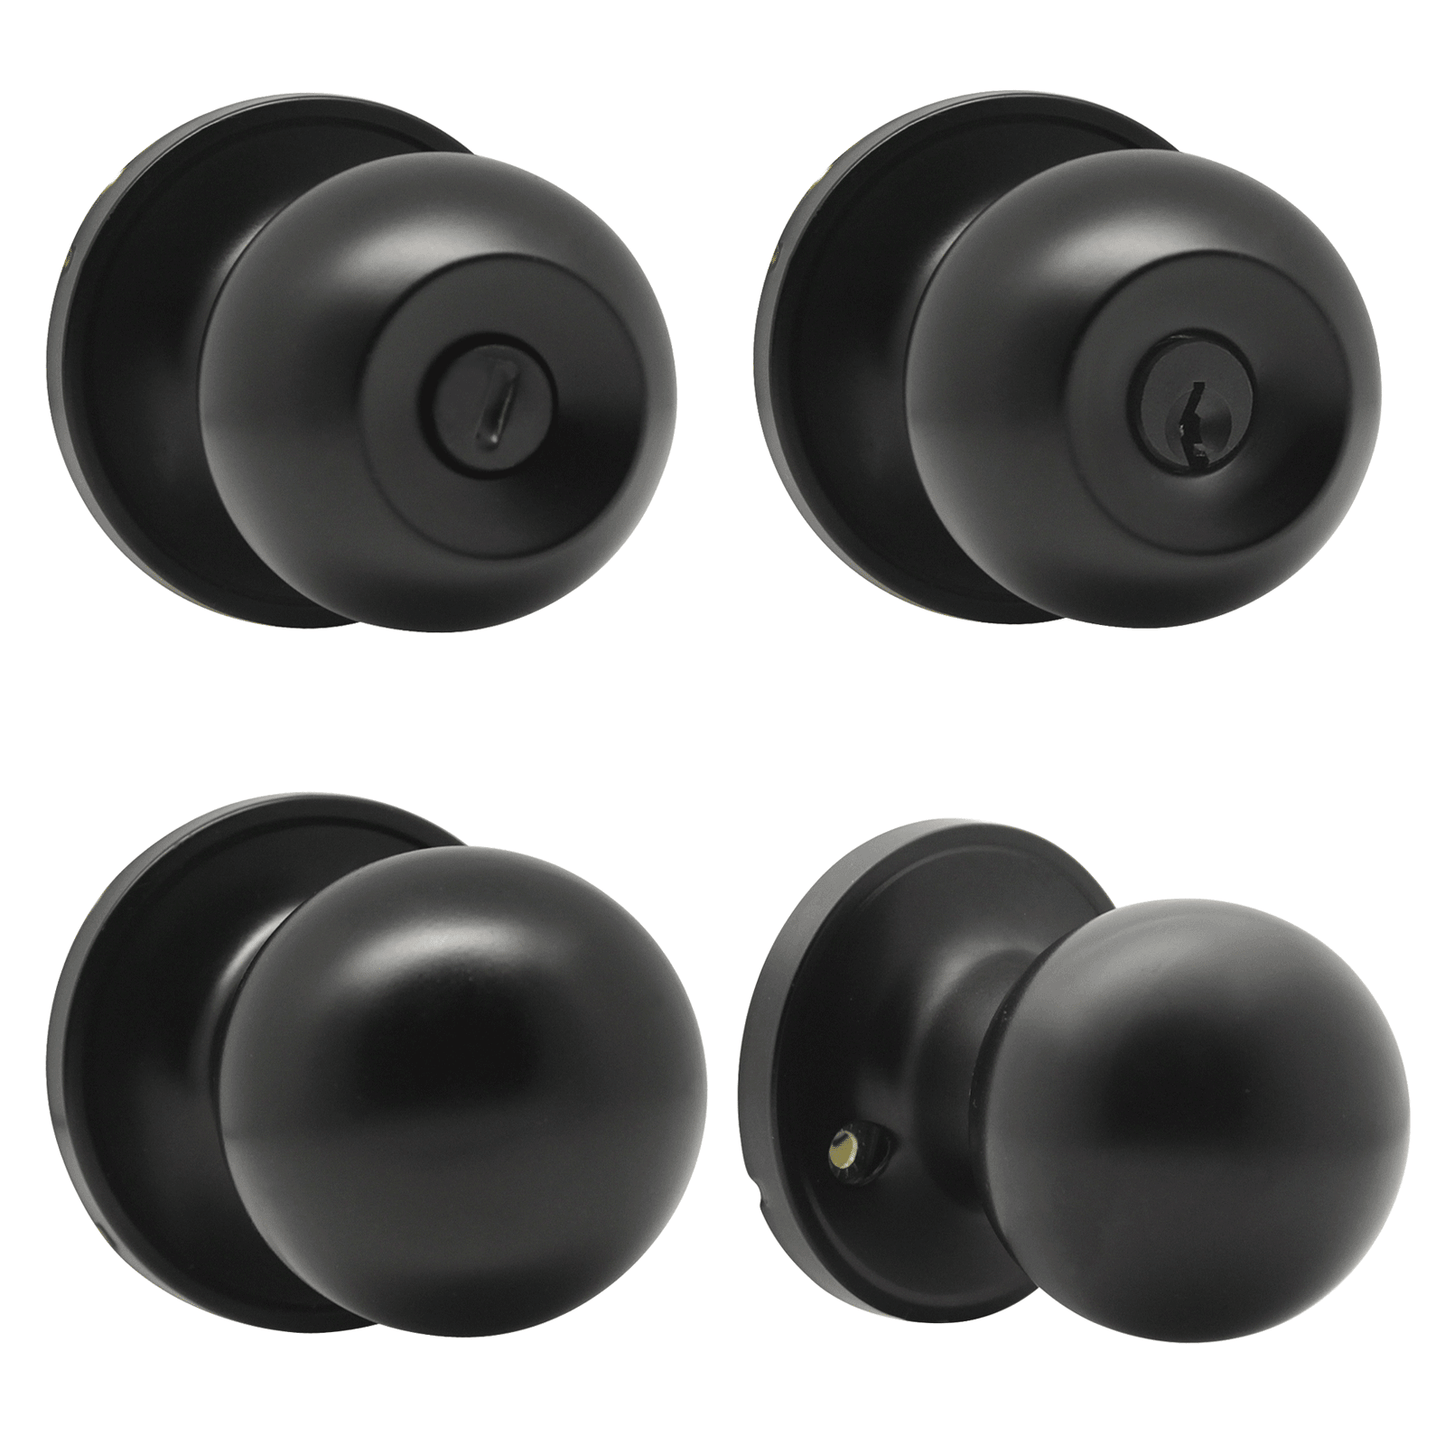 Round Ball Knobs Keyed Alike/Keyed Entry/Privacy/Passage/Dummy Door Lock Knob, Black Finish DL607BK - Probrico